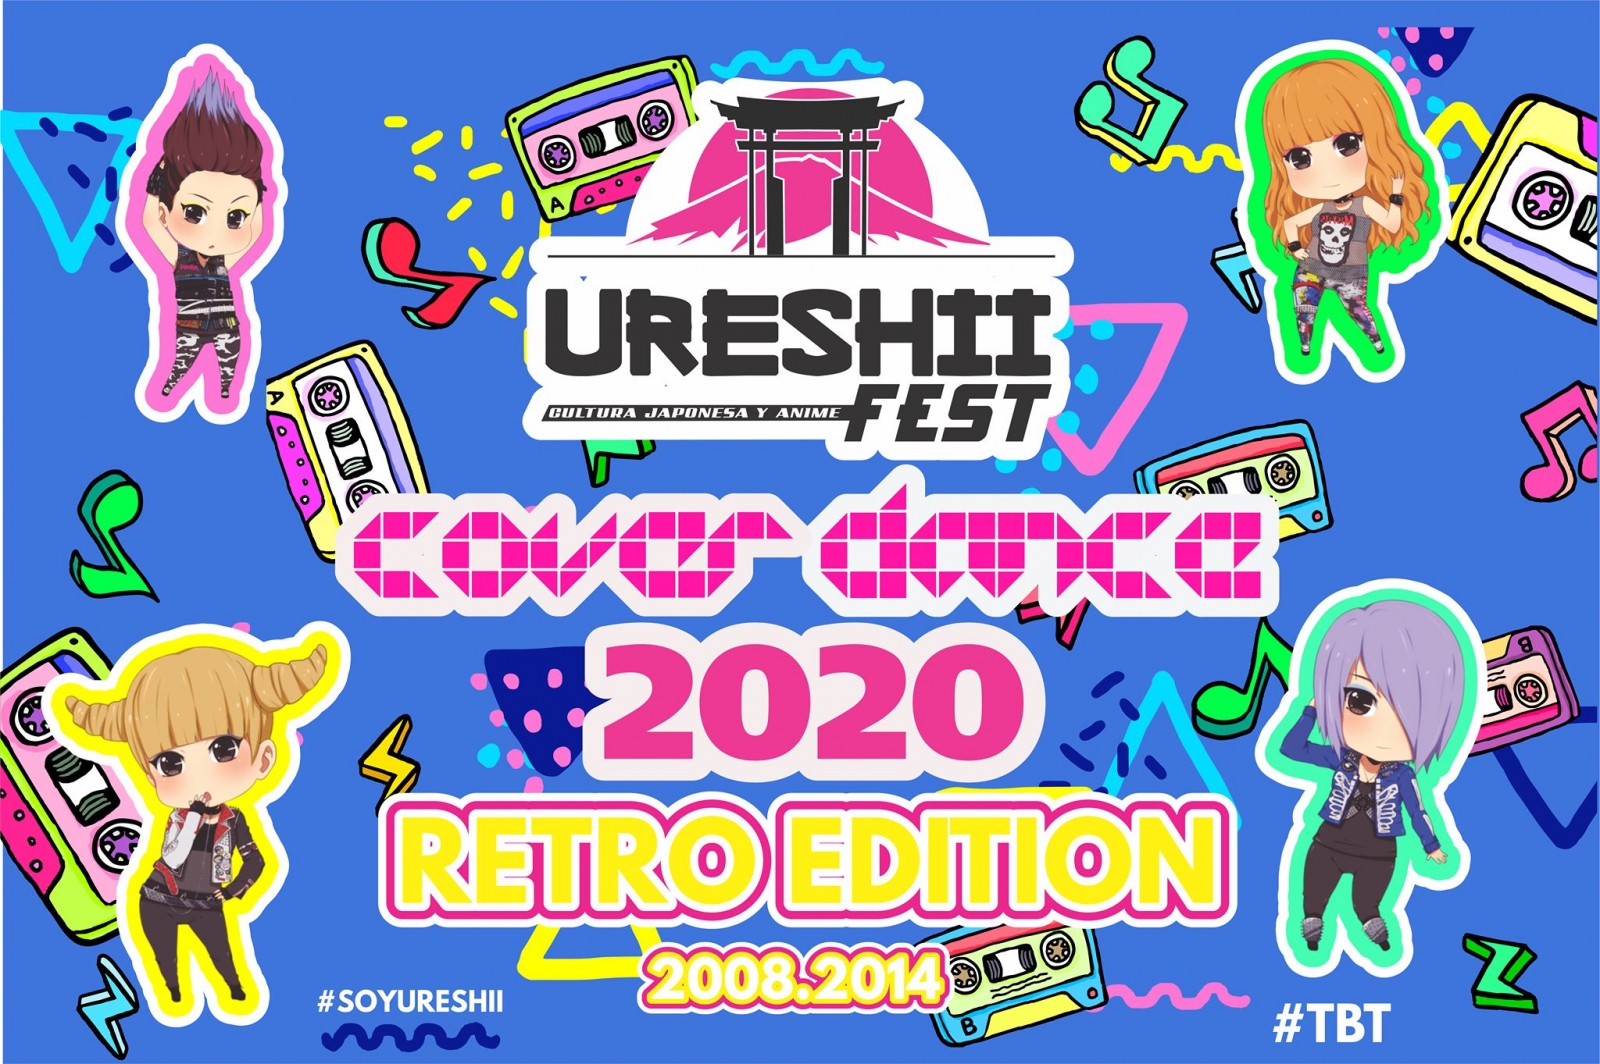 UreshiiFest Cover Dance 2019 poster